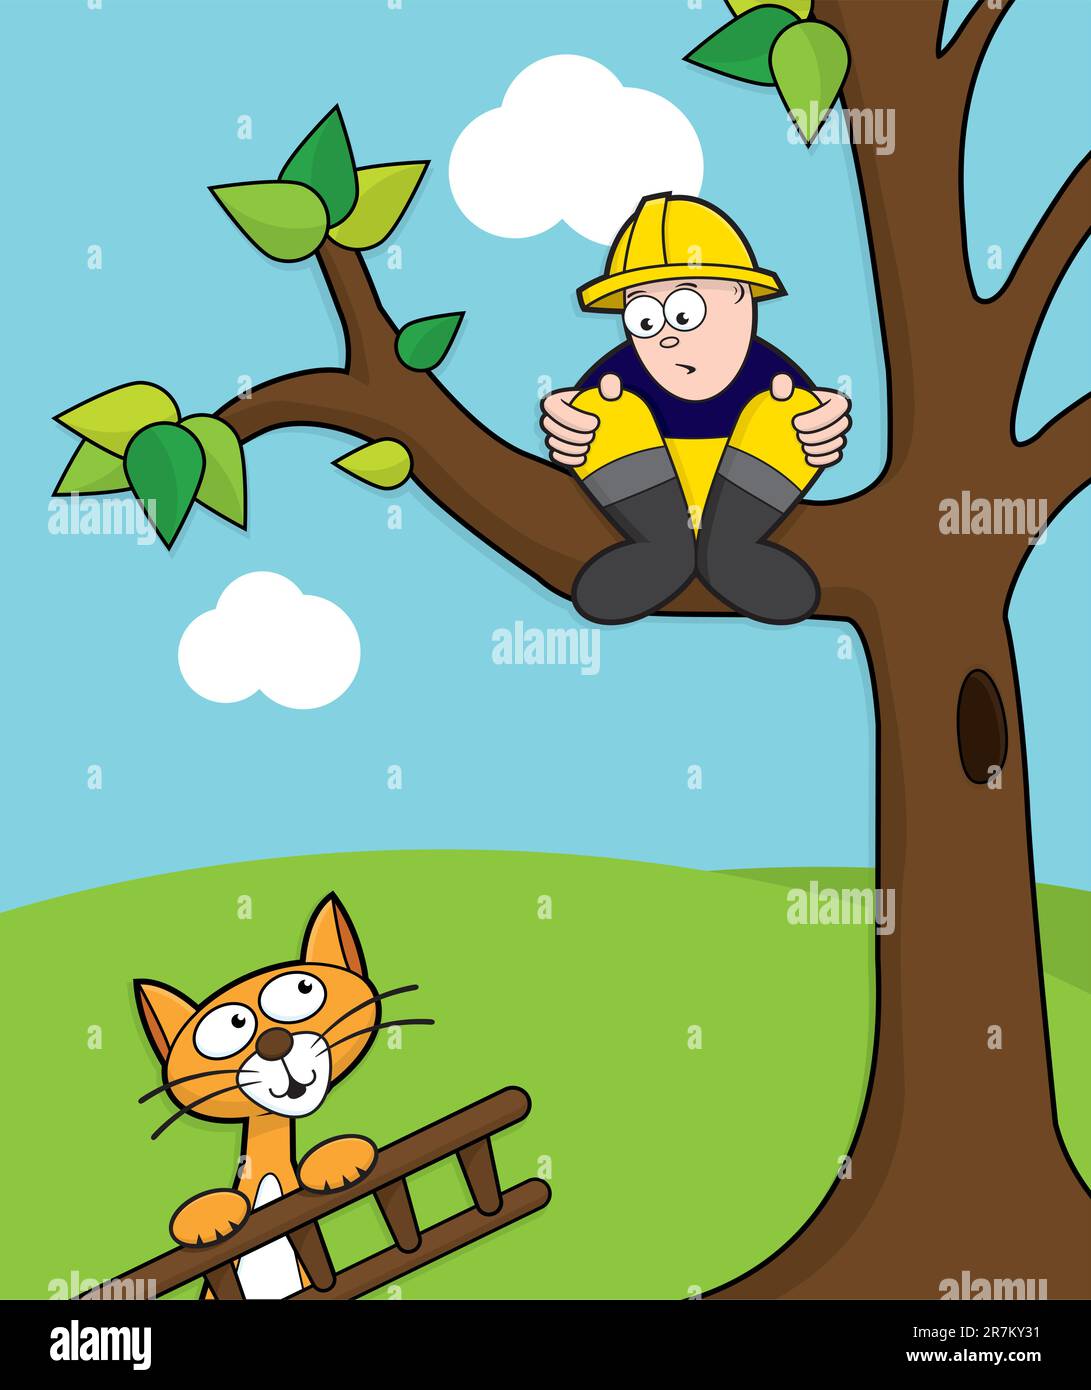 Die Katze kommt, um einen Feuerwehrmann zu retten, der mit einer Leiter auf einem Baum hängt. Stock Vektor